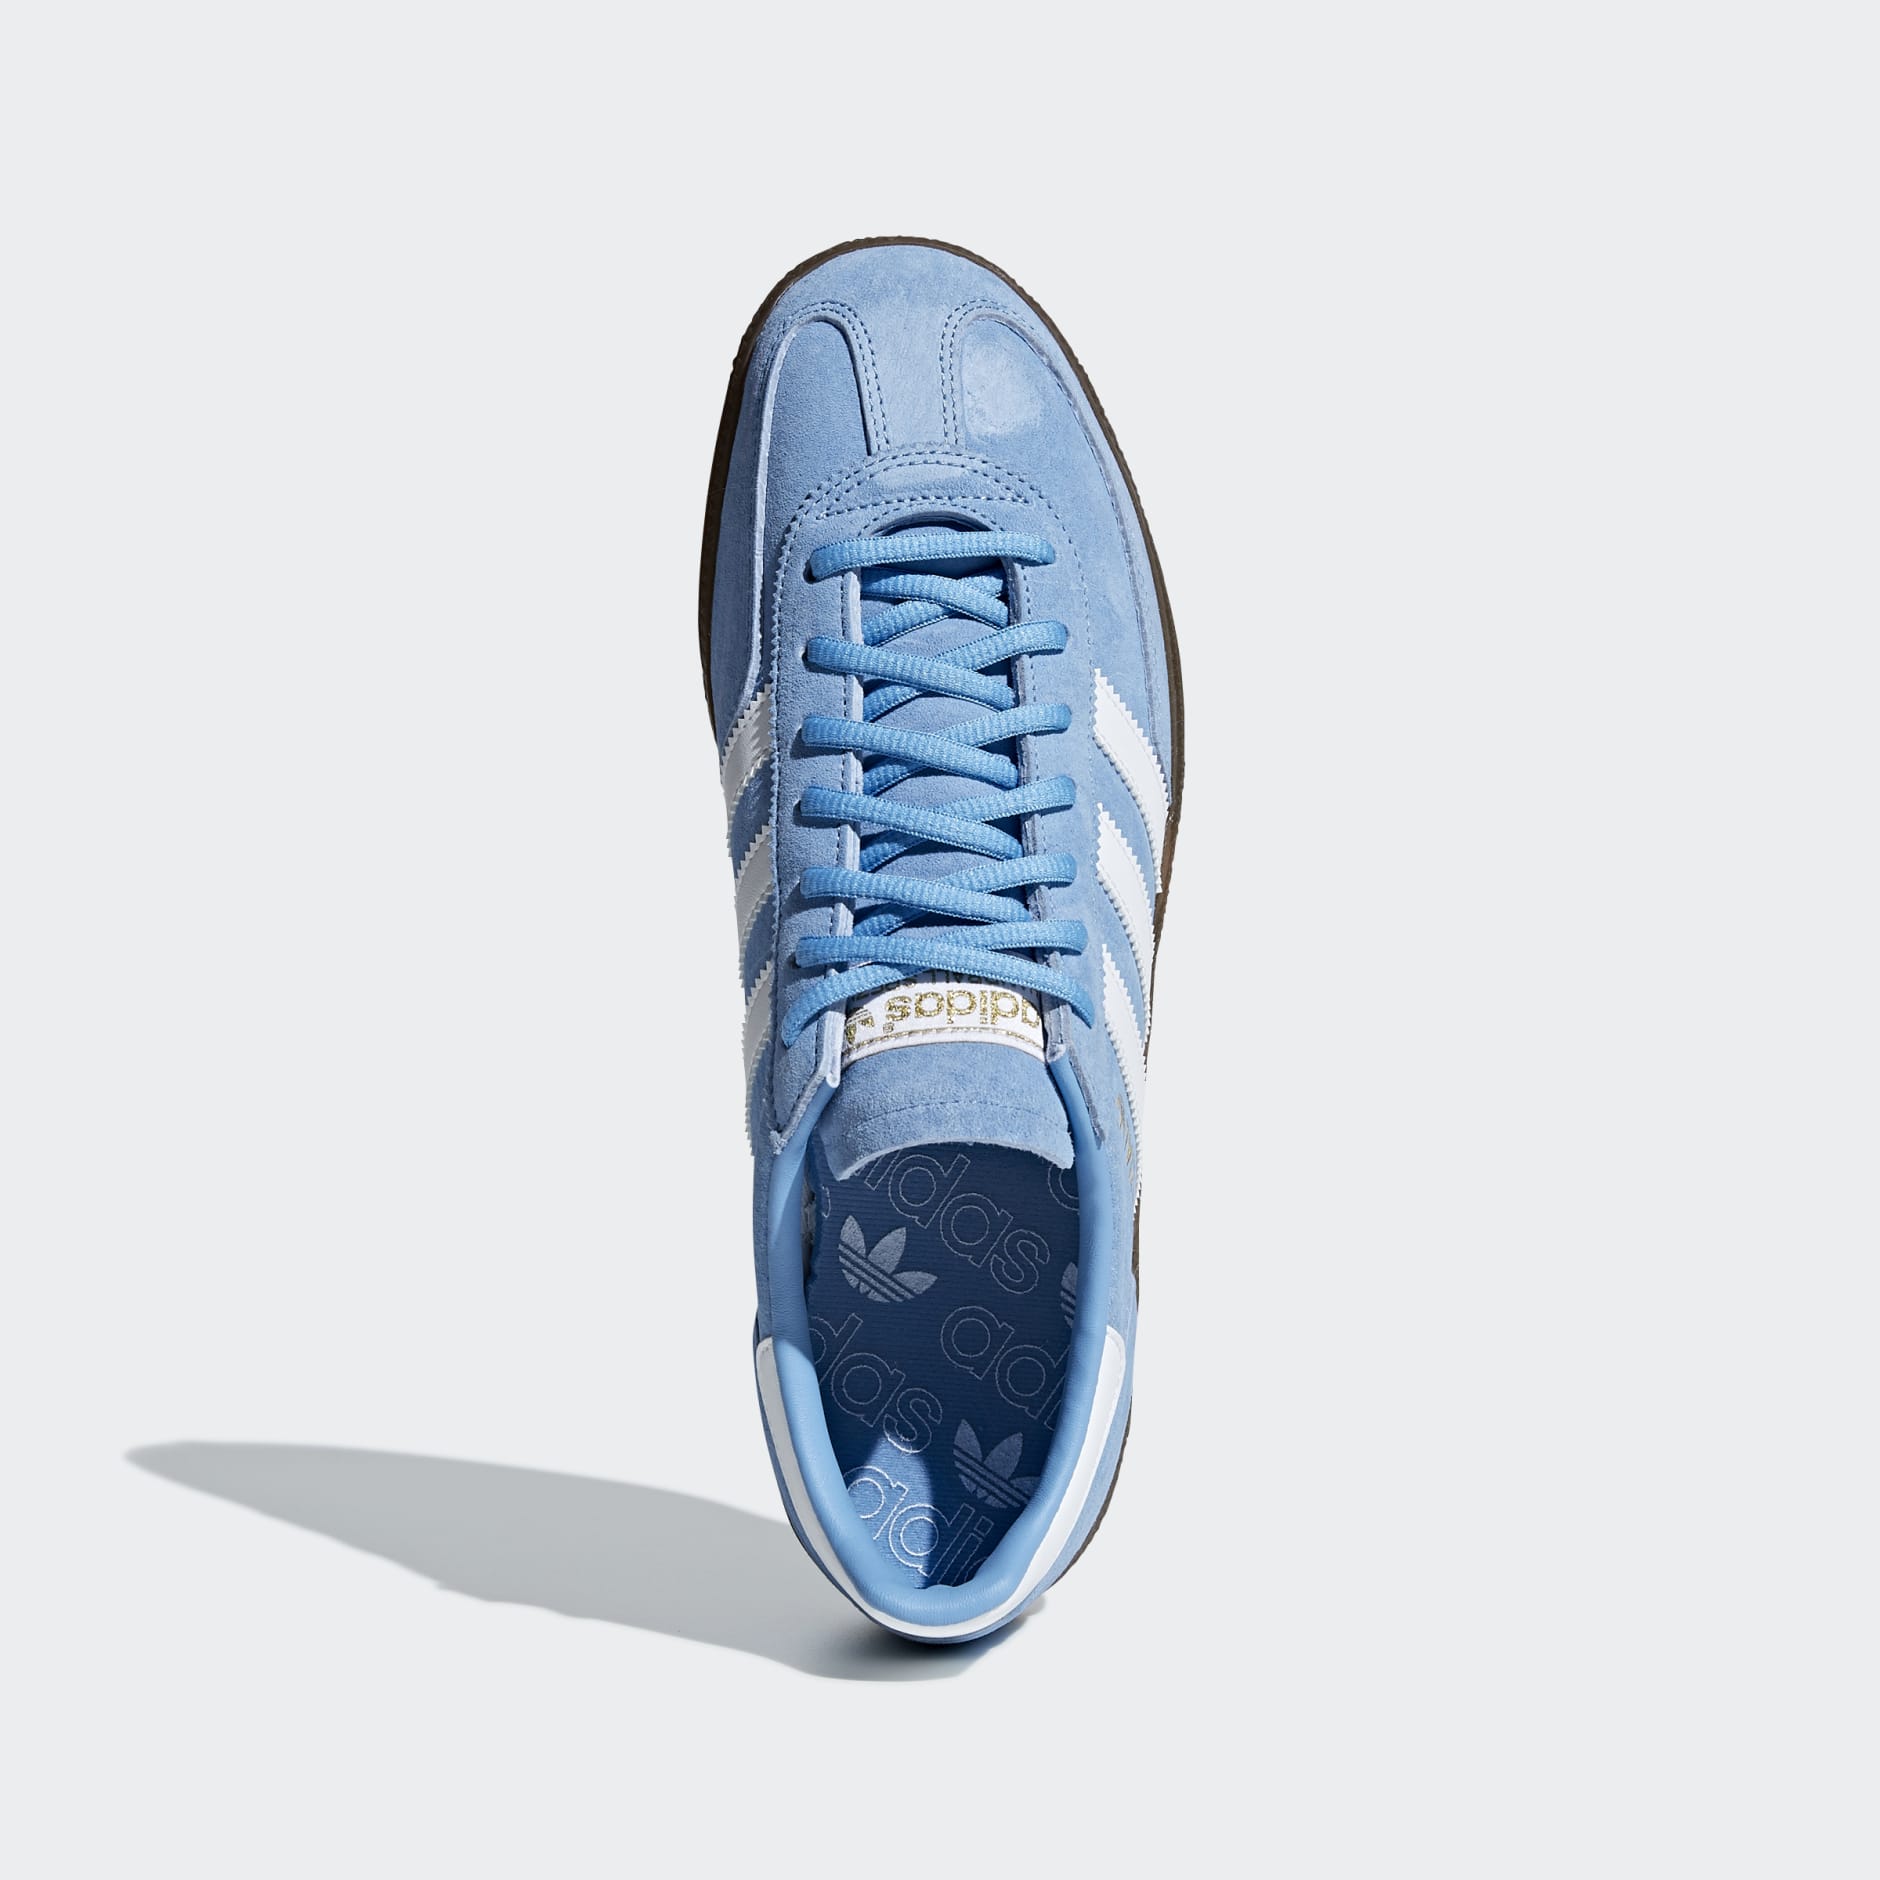 adidas Originals Handball Spezial Light Blue/White/Gum